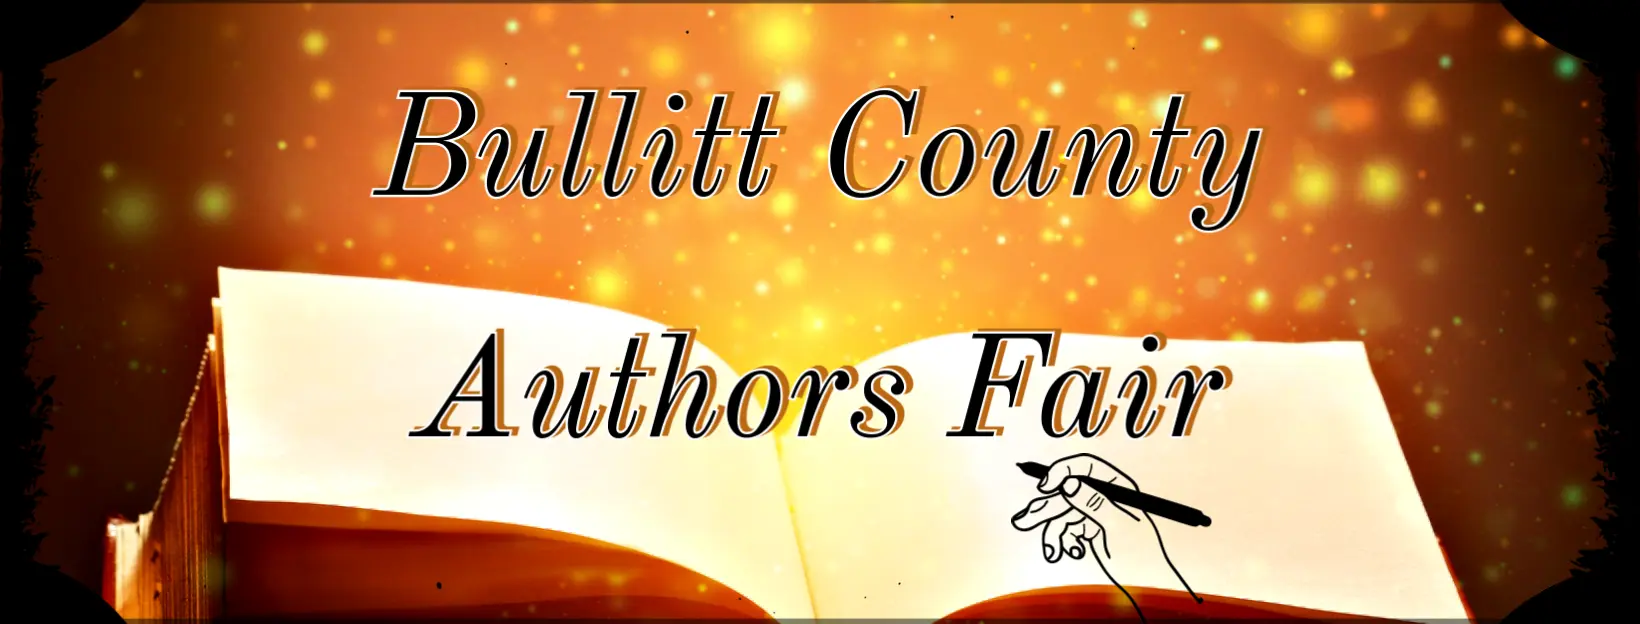 Bullitt County Authors Fair logo